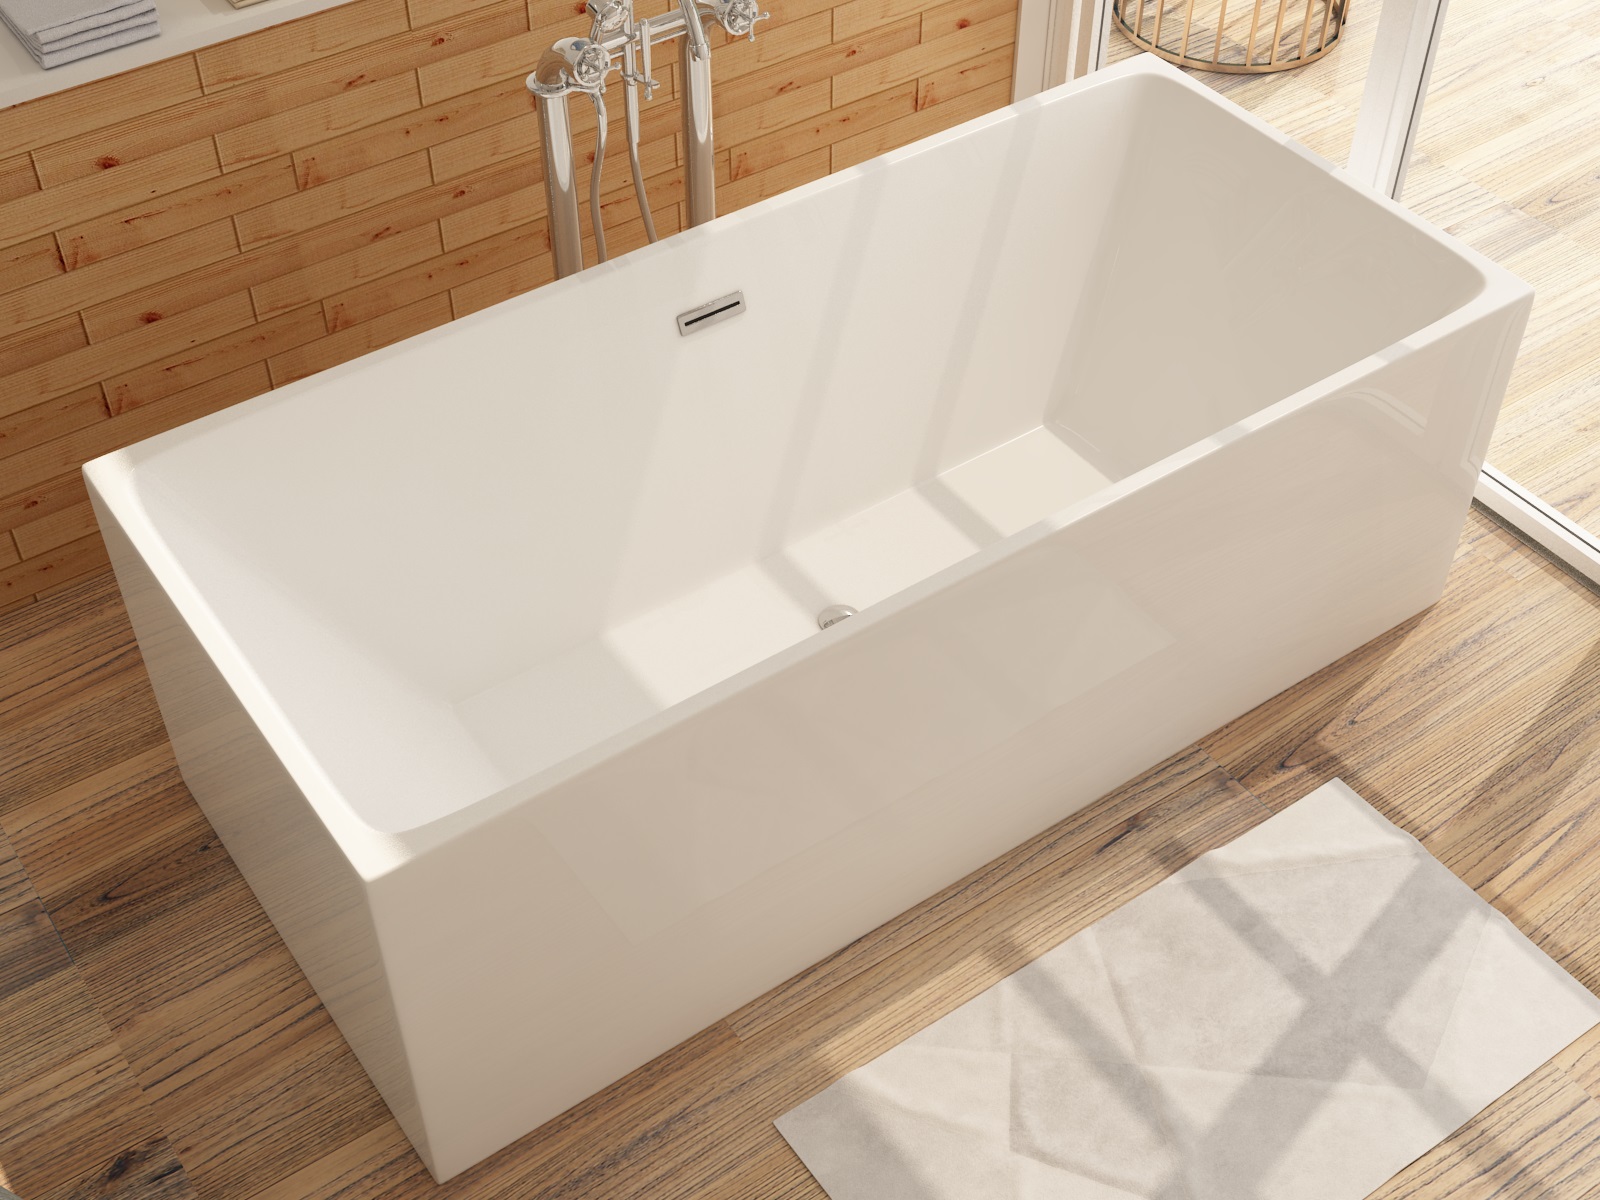 Freistehende Badewanne ALTENA Design aus Acryl in Weiß - 3 Größen